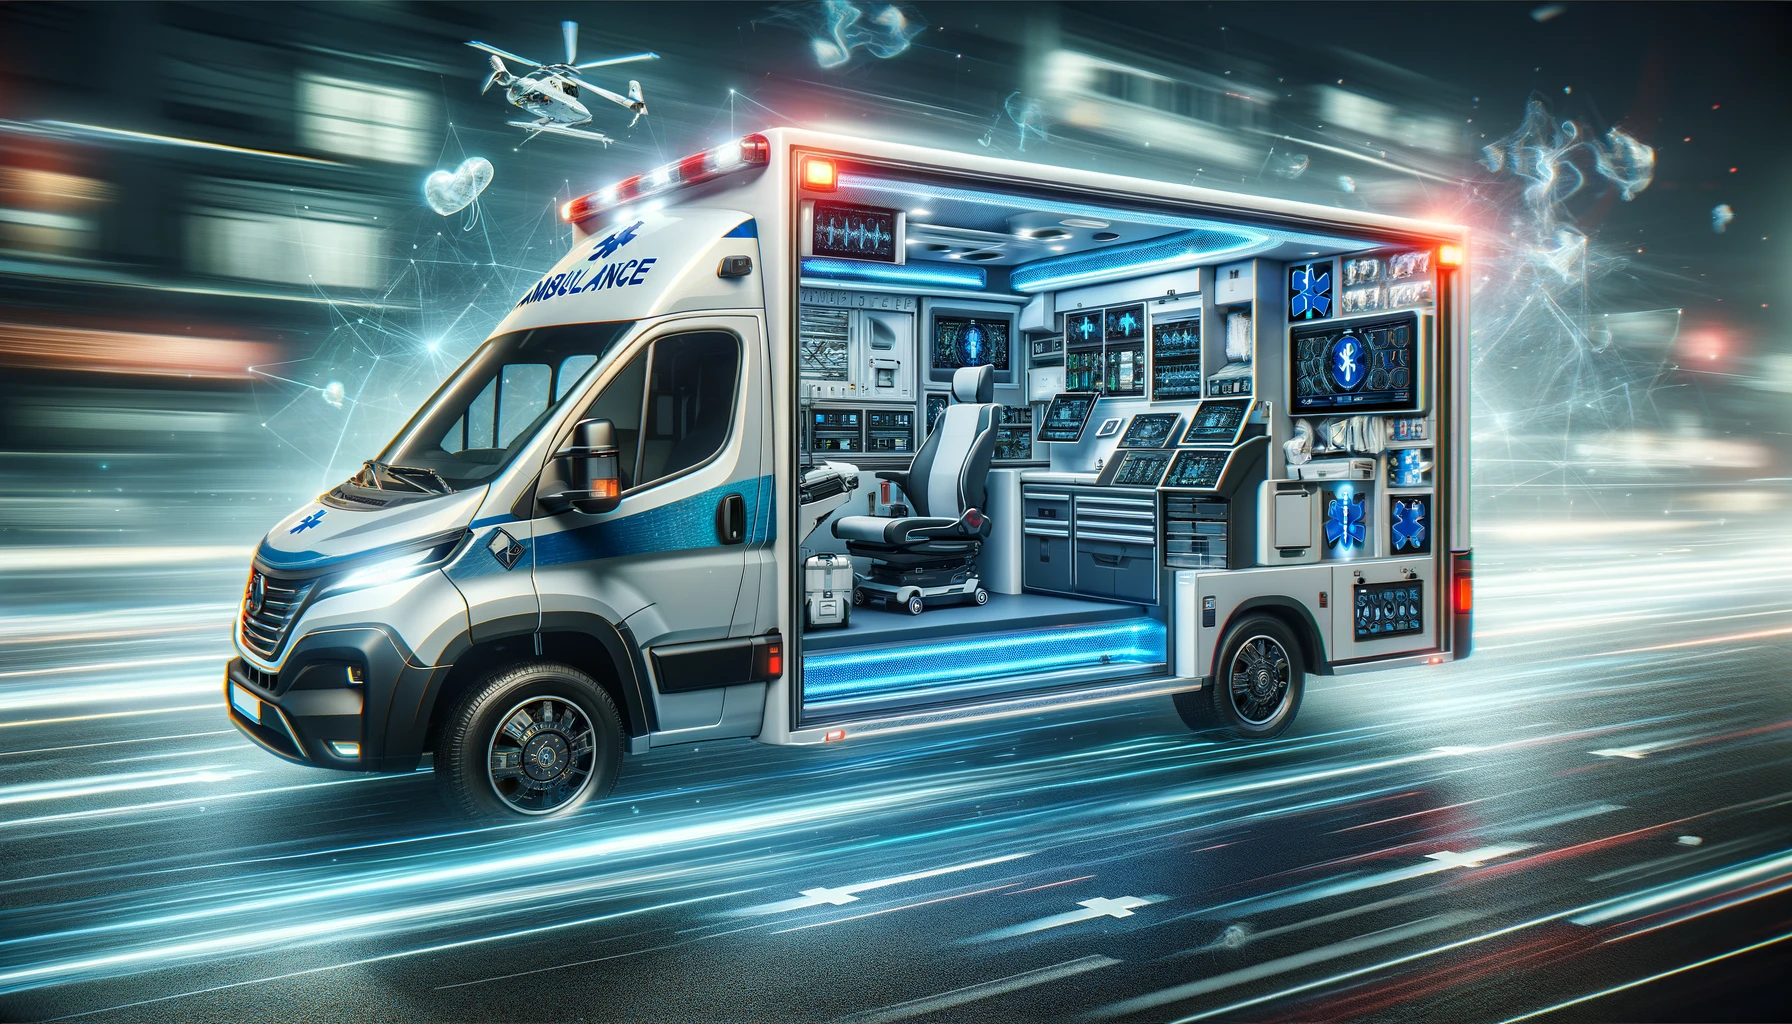 smart ambulance